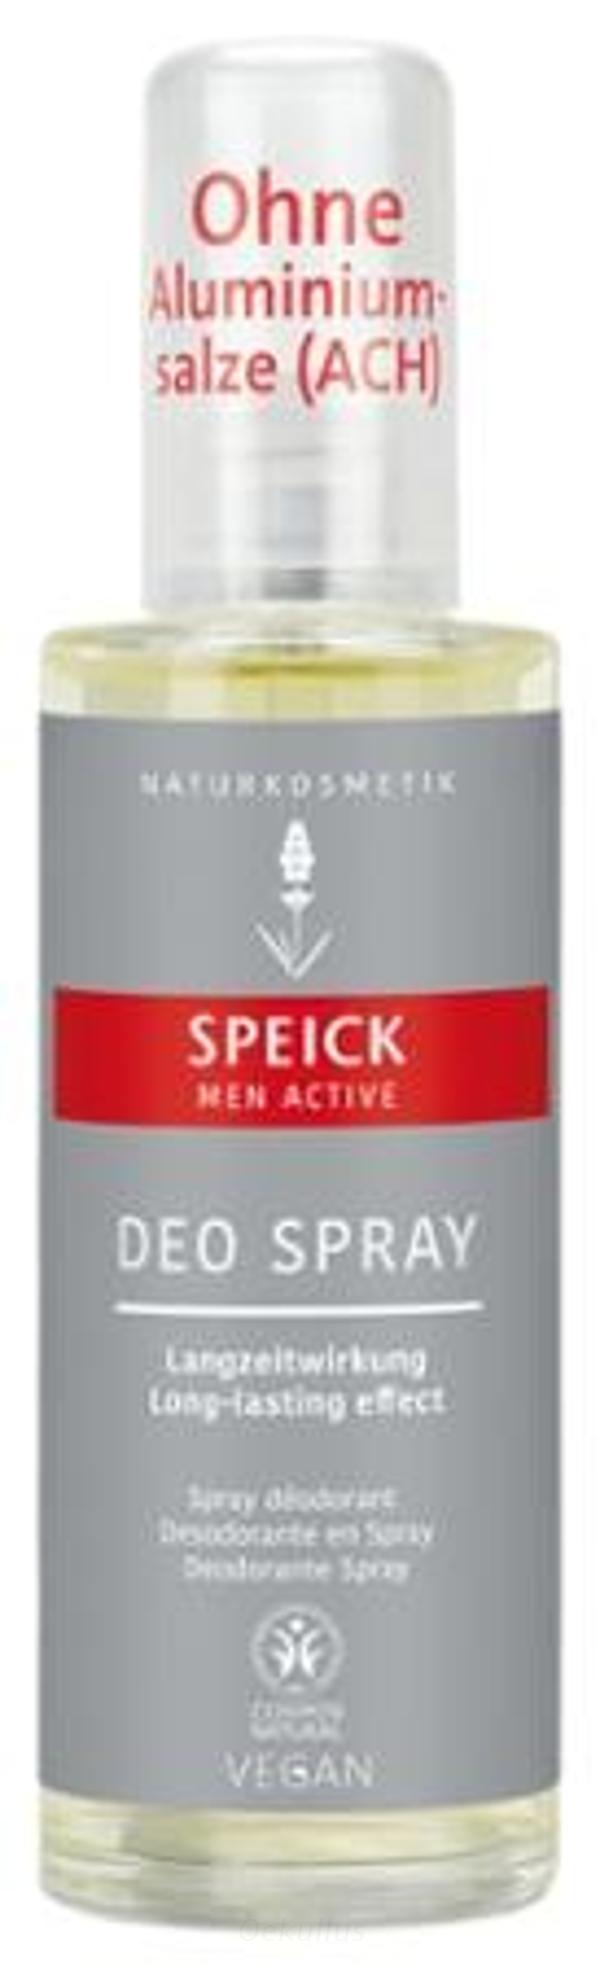 Produktfoto zu Speick Men Active Deo Spray